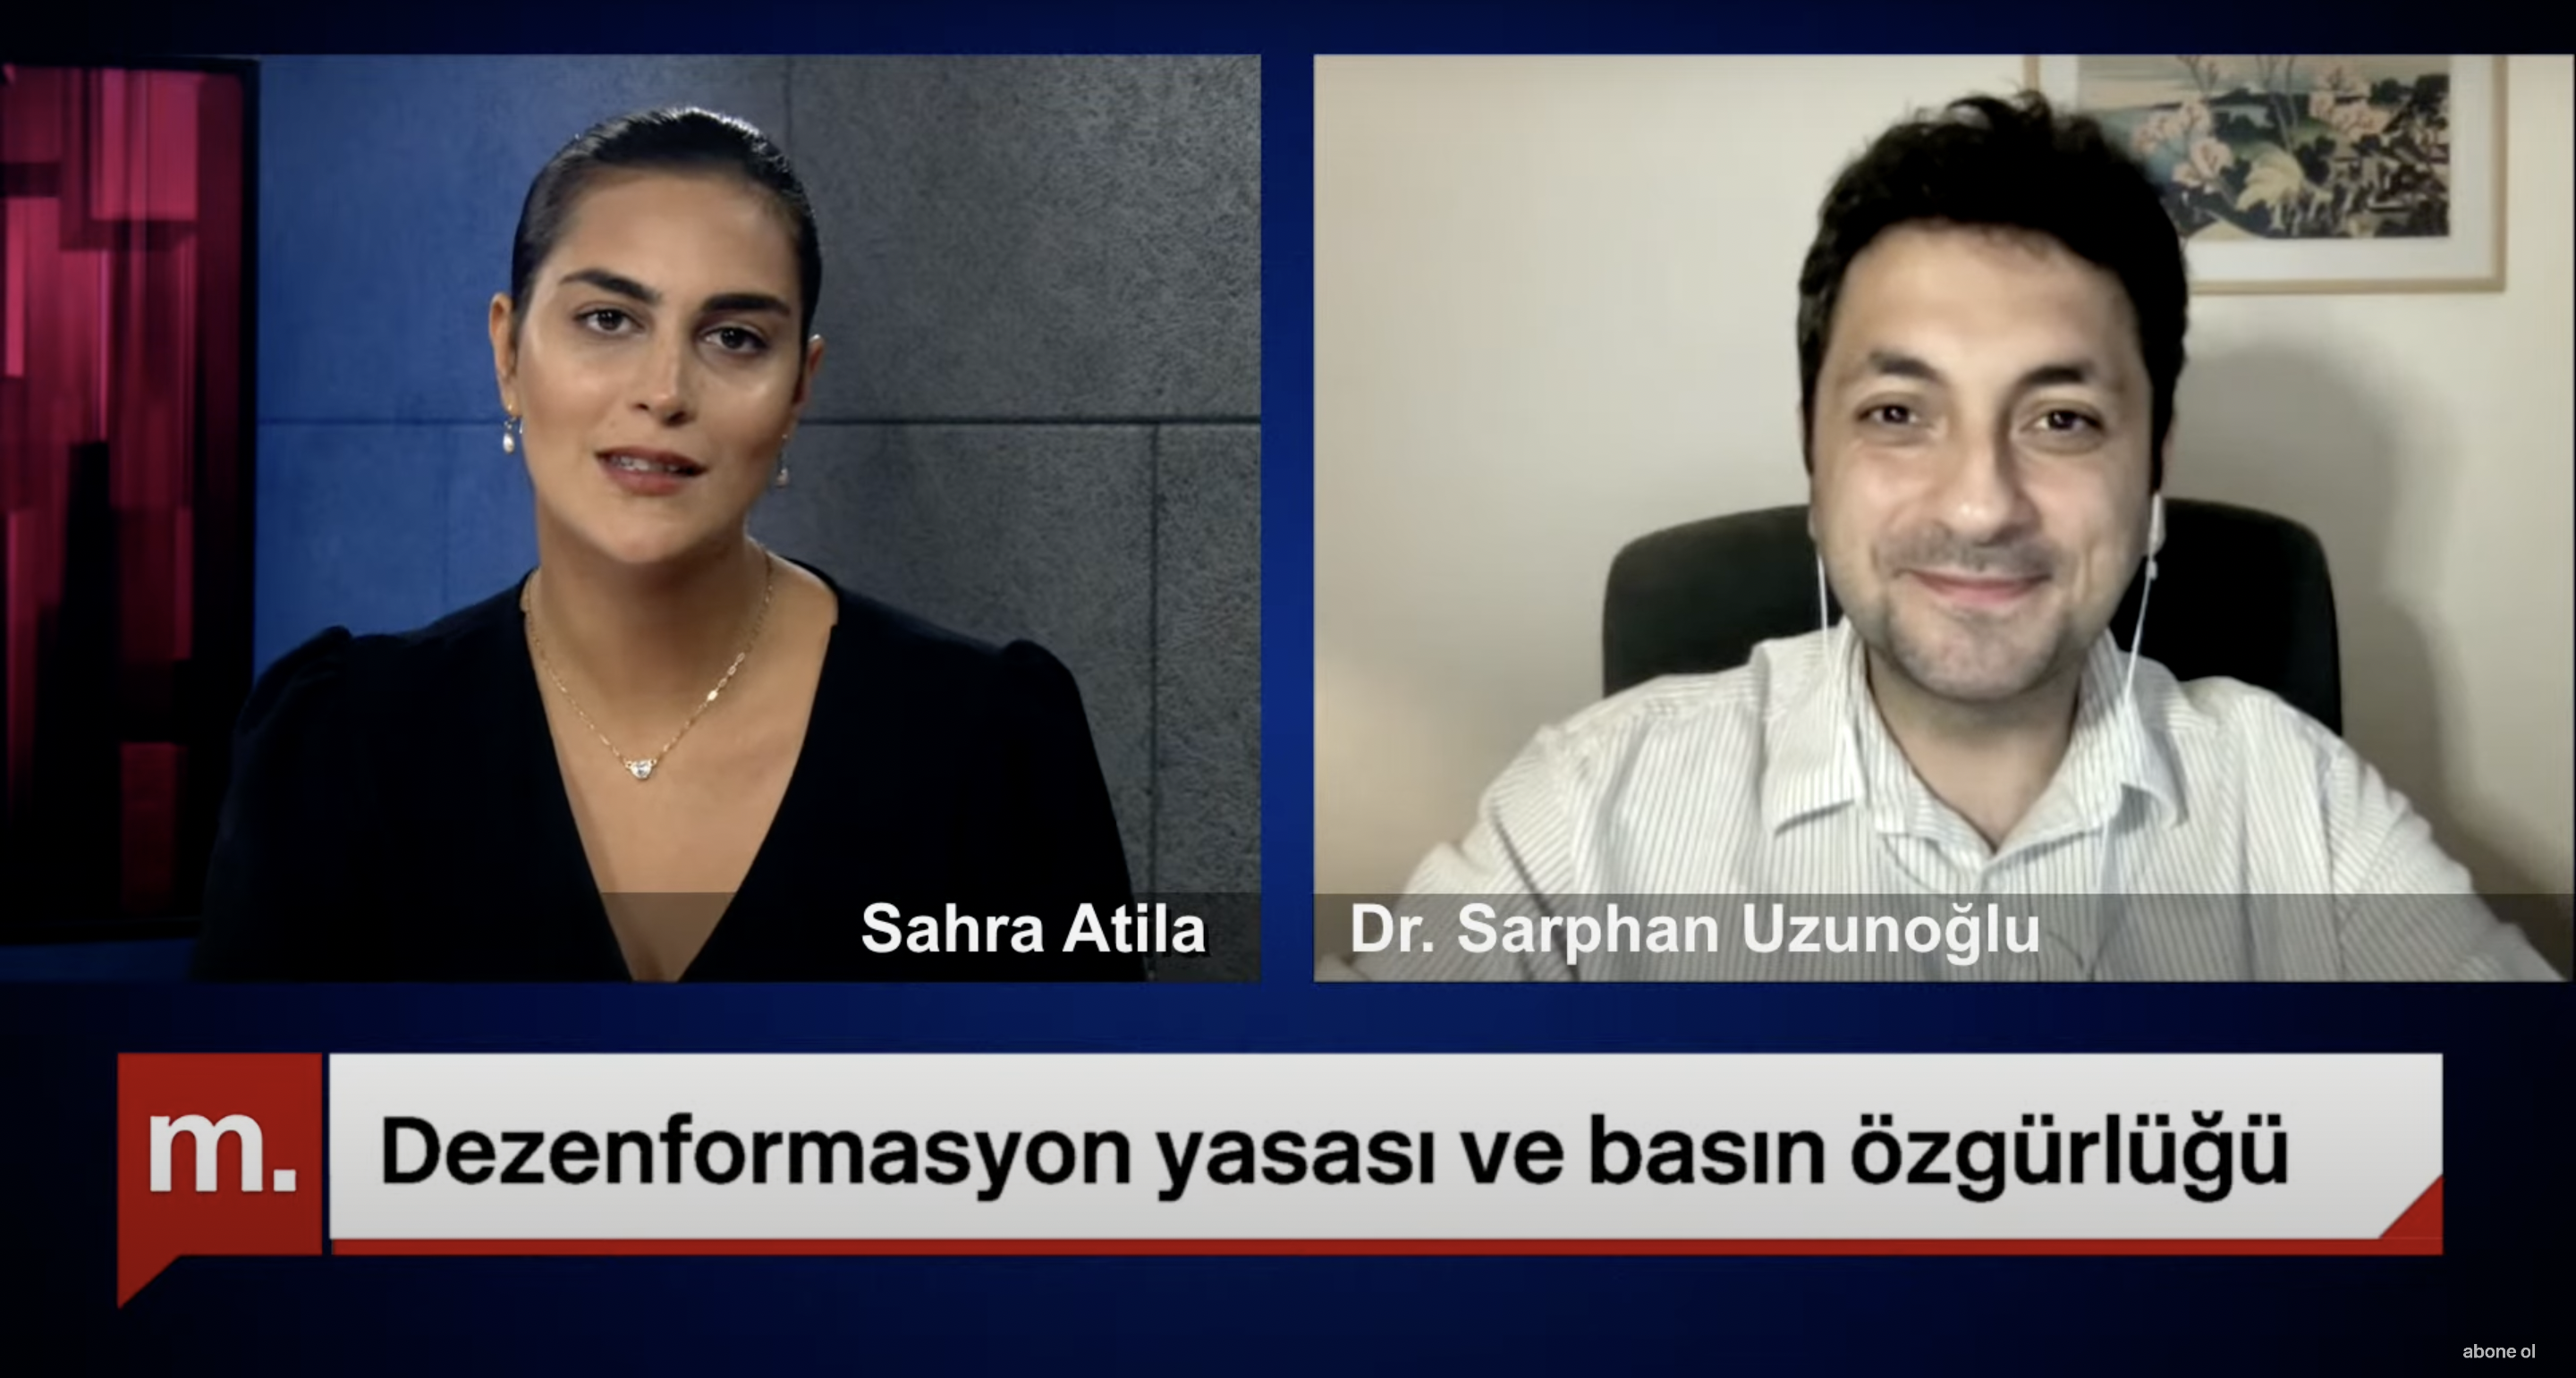 Medyascope TV: Dezenformasyon yasası ve basın özgürlüğü | İstanbul'un kentsel dönüşüm çatışmaları